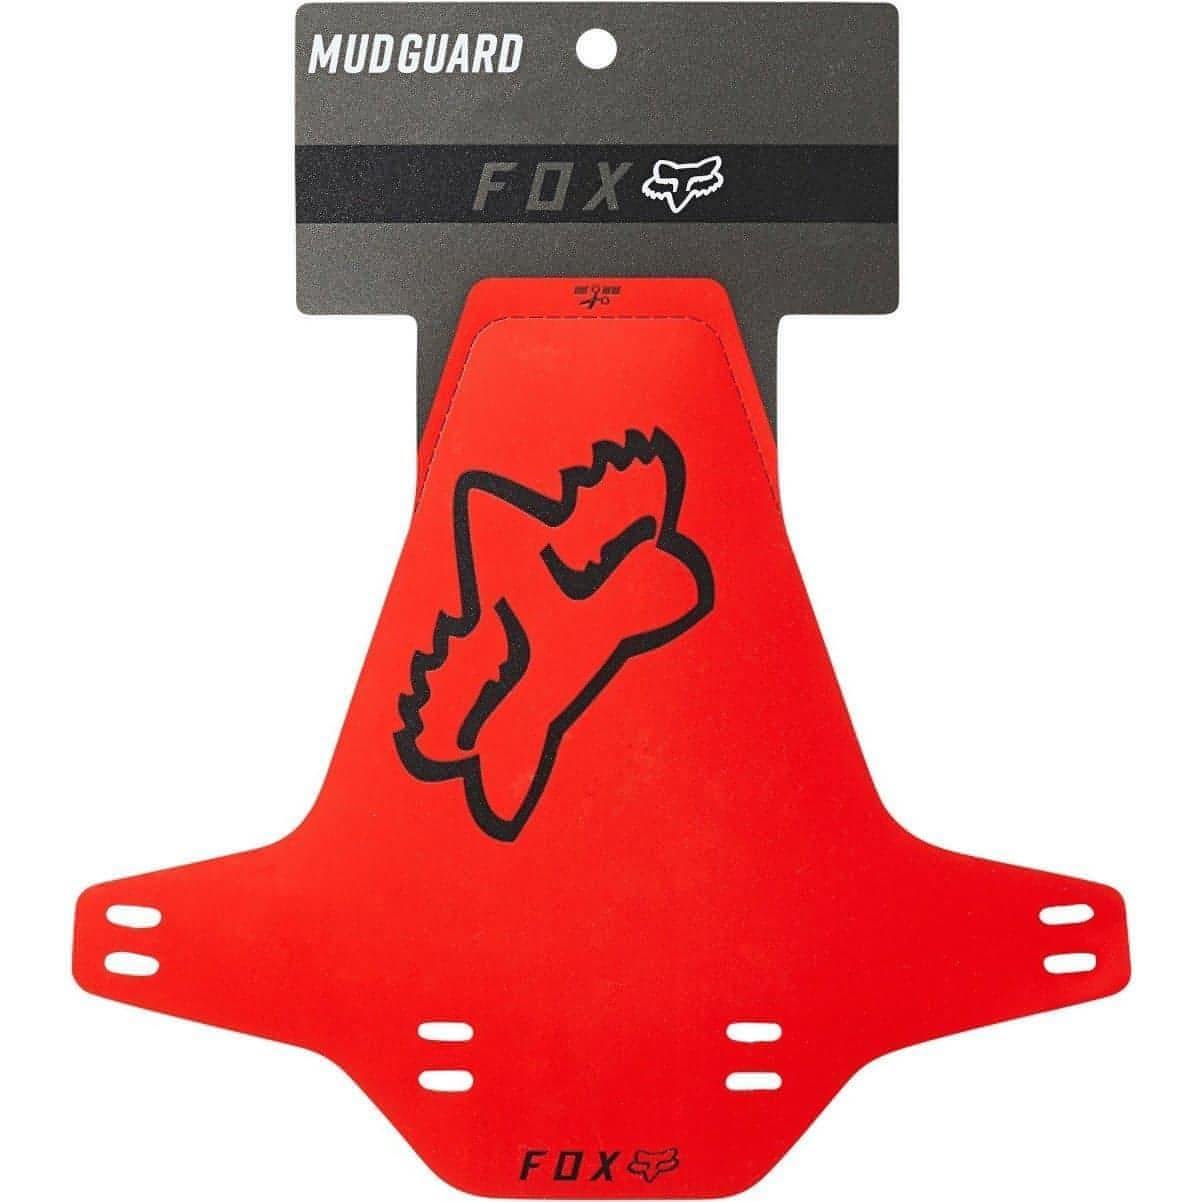 Fox Mud Guard - Red 191972347696 - Start Fitness